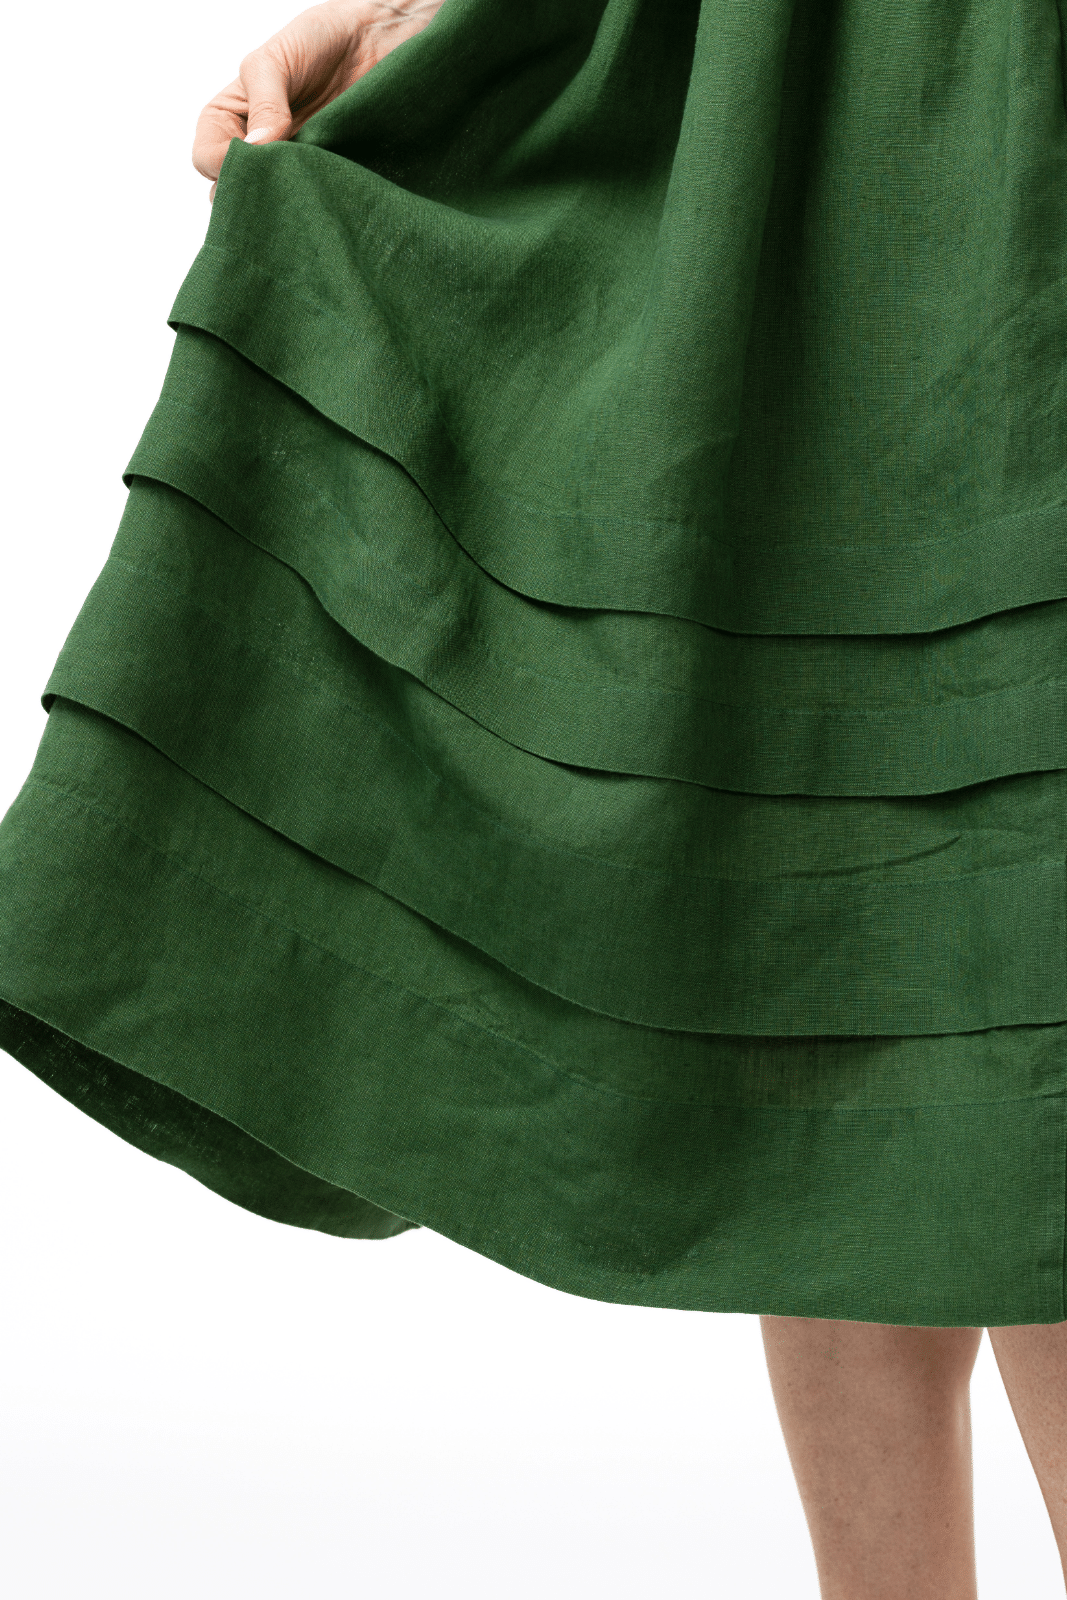 Eyre Dress, Short Sleeve, Emerald Green